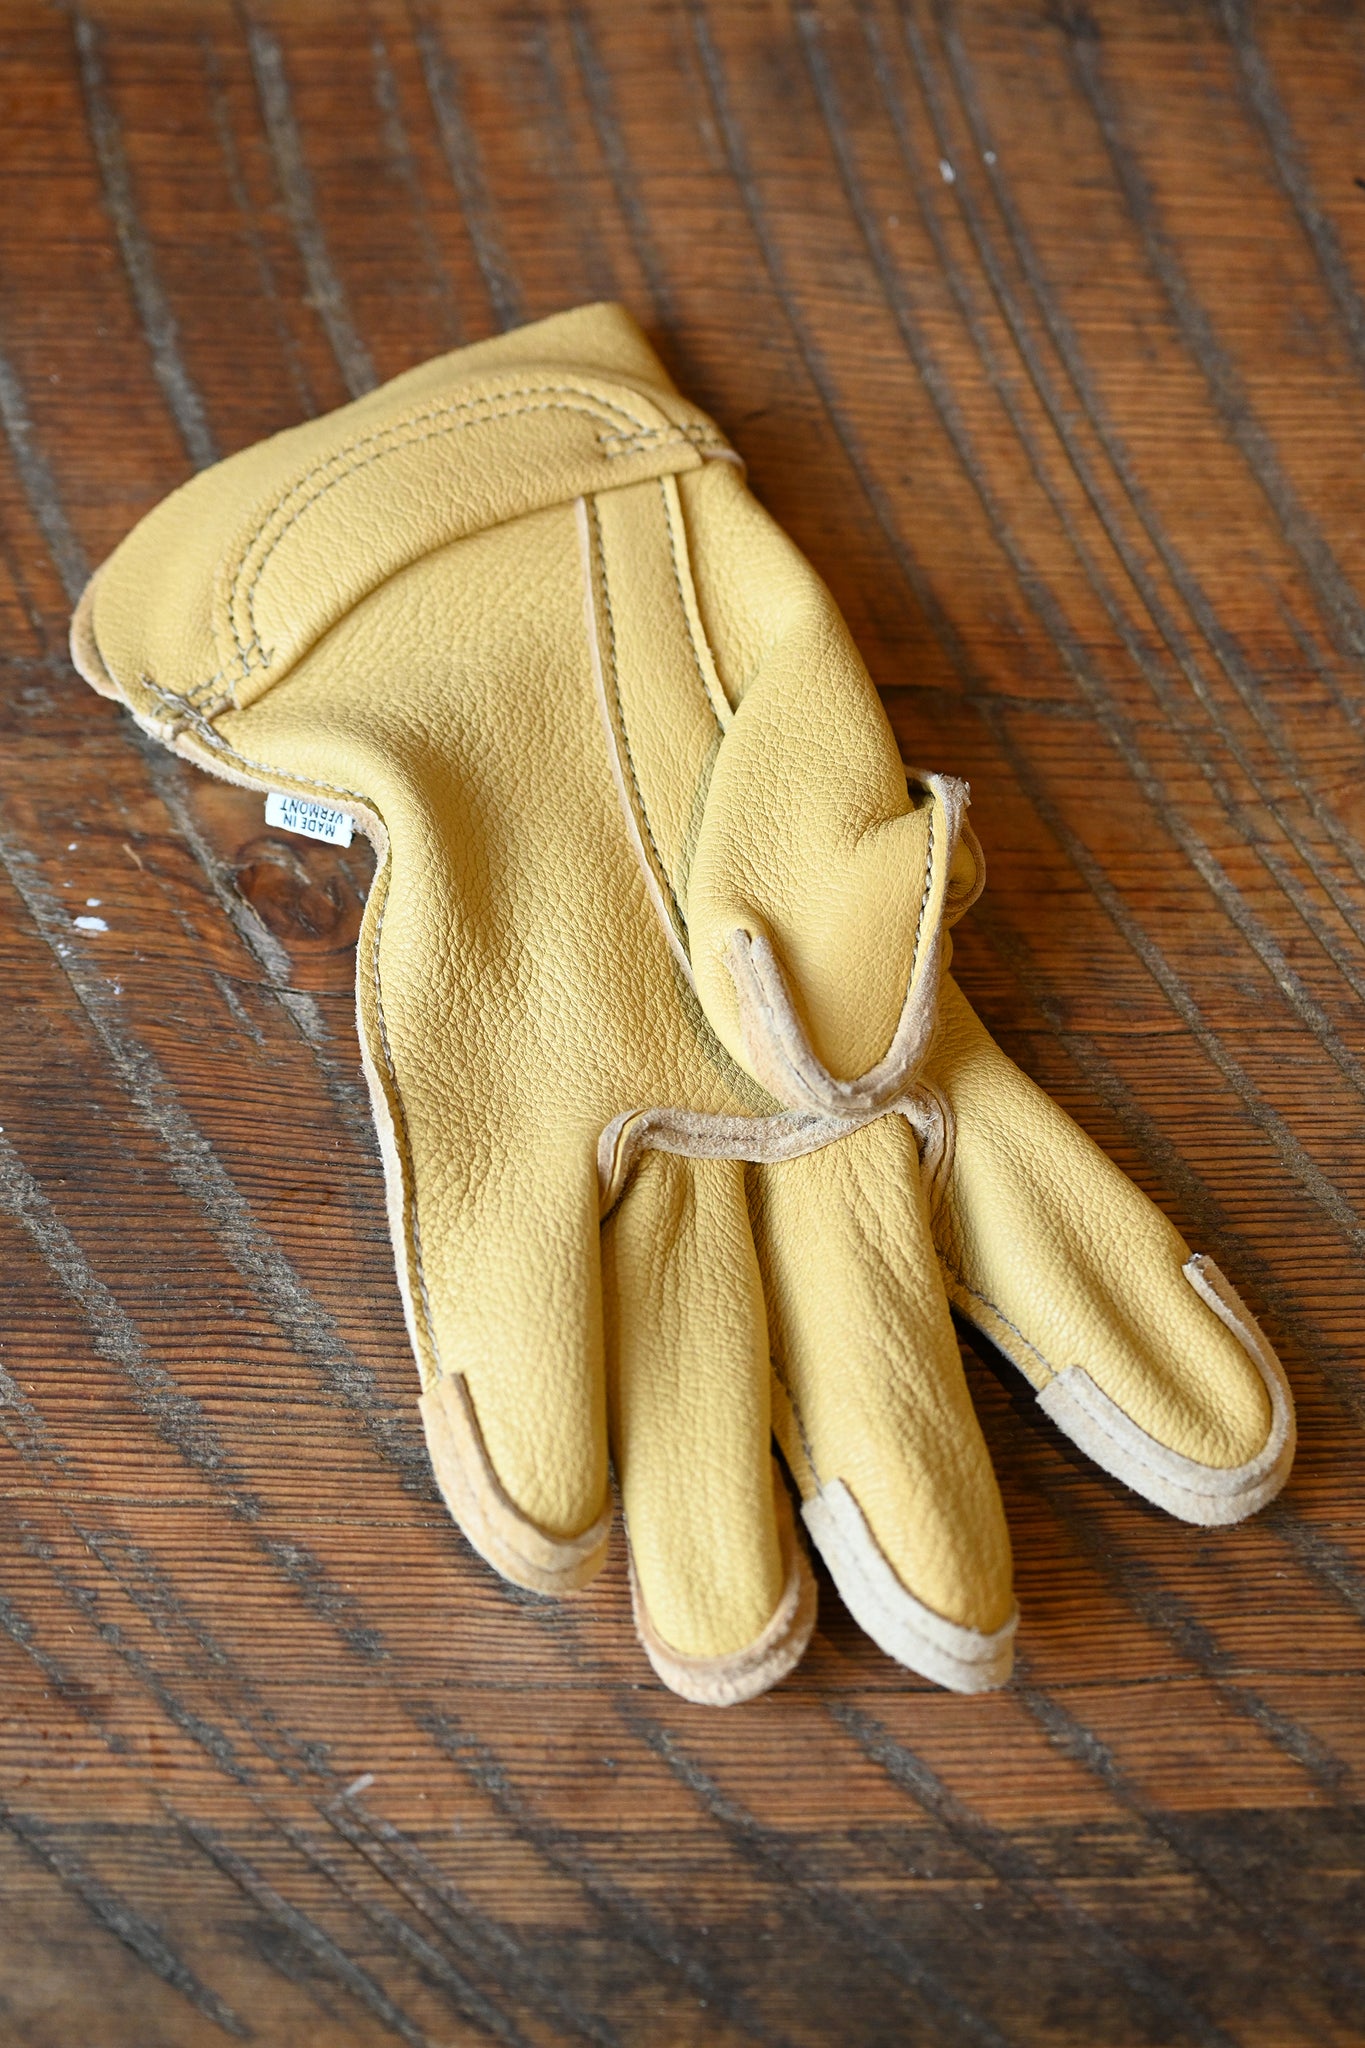 Vermont Work Gloves - Handmade in Vermont since 1920